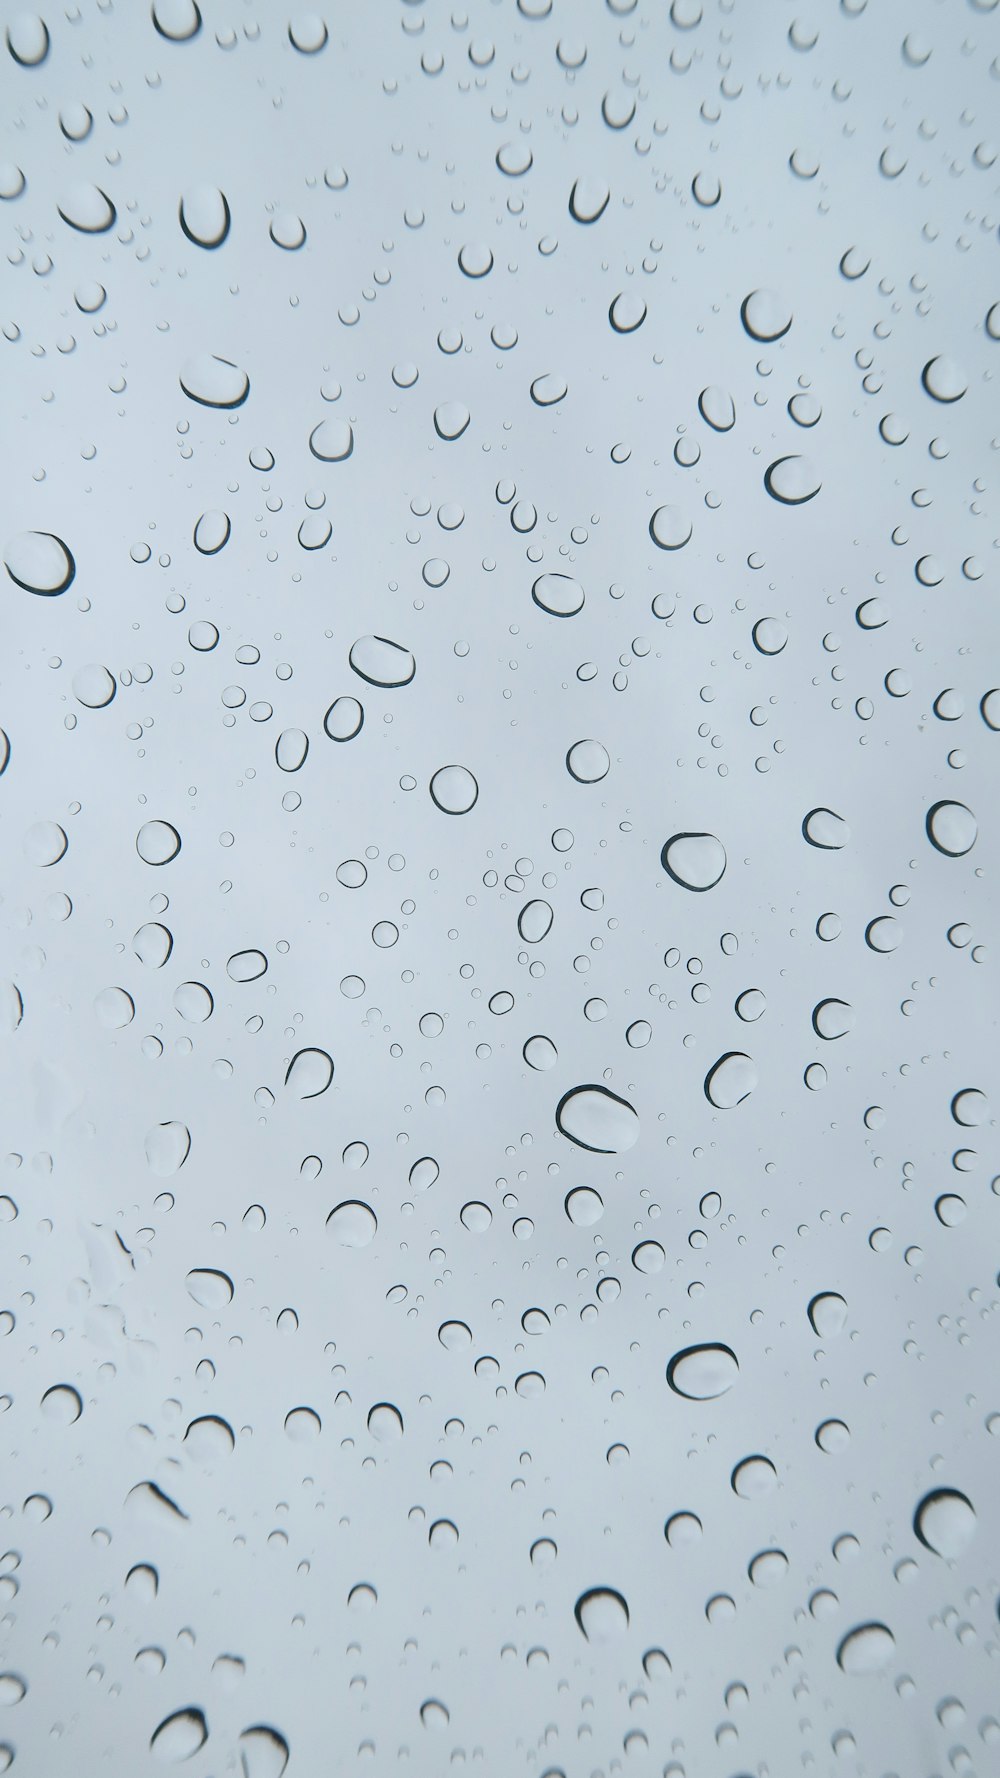 La lluvia cae sobre una ventana con un cielo azul de fondo